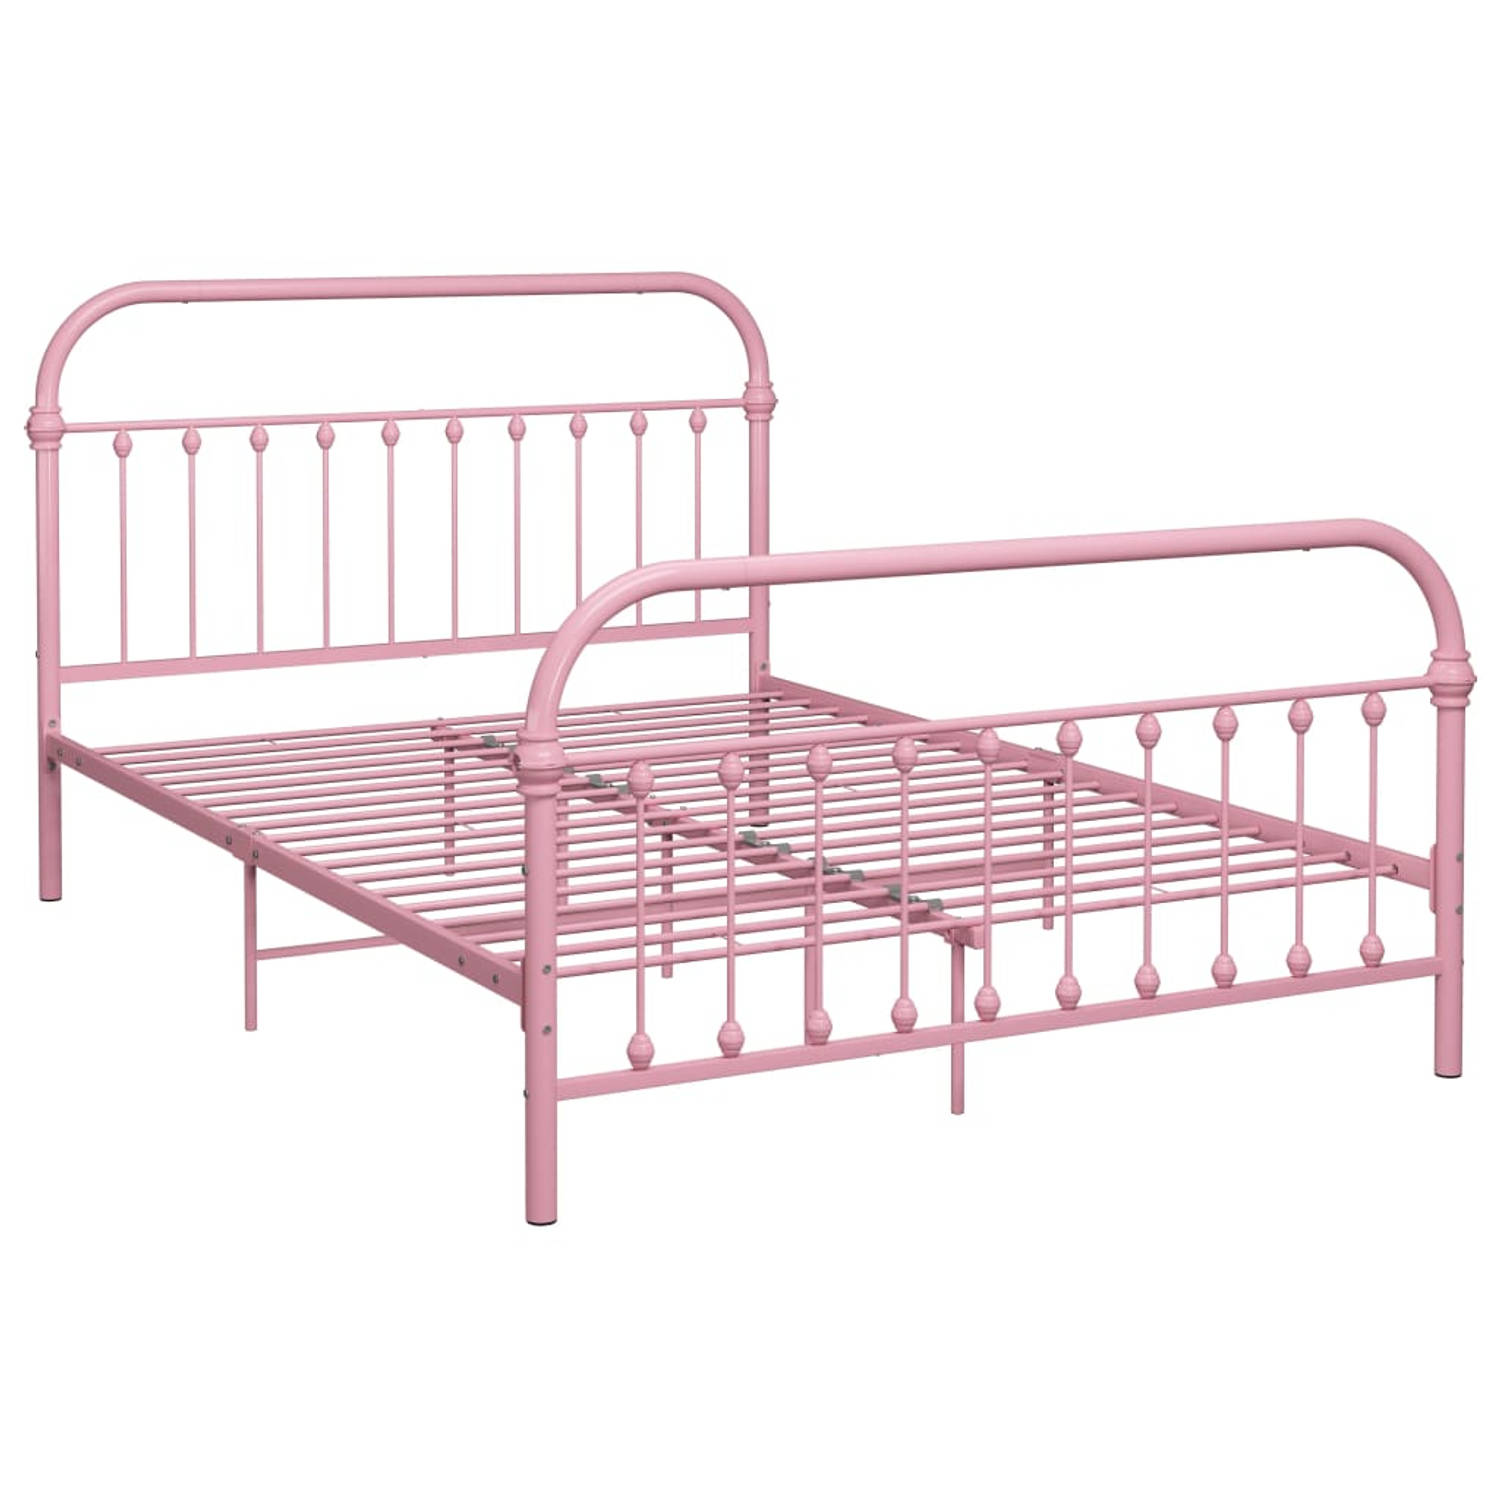 The Living Store Bedframe metaal roze 120x200 cm - Bedframe - Bedframes - Tweepersoonsbed - Tweepersoonsbedden - Bed - Bedden - Bedombouw - Bedombouwen - Frame - Frames - Slaapmeub